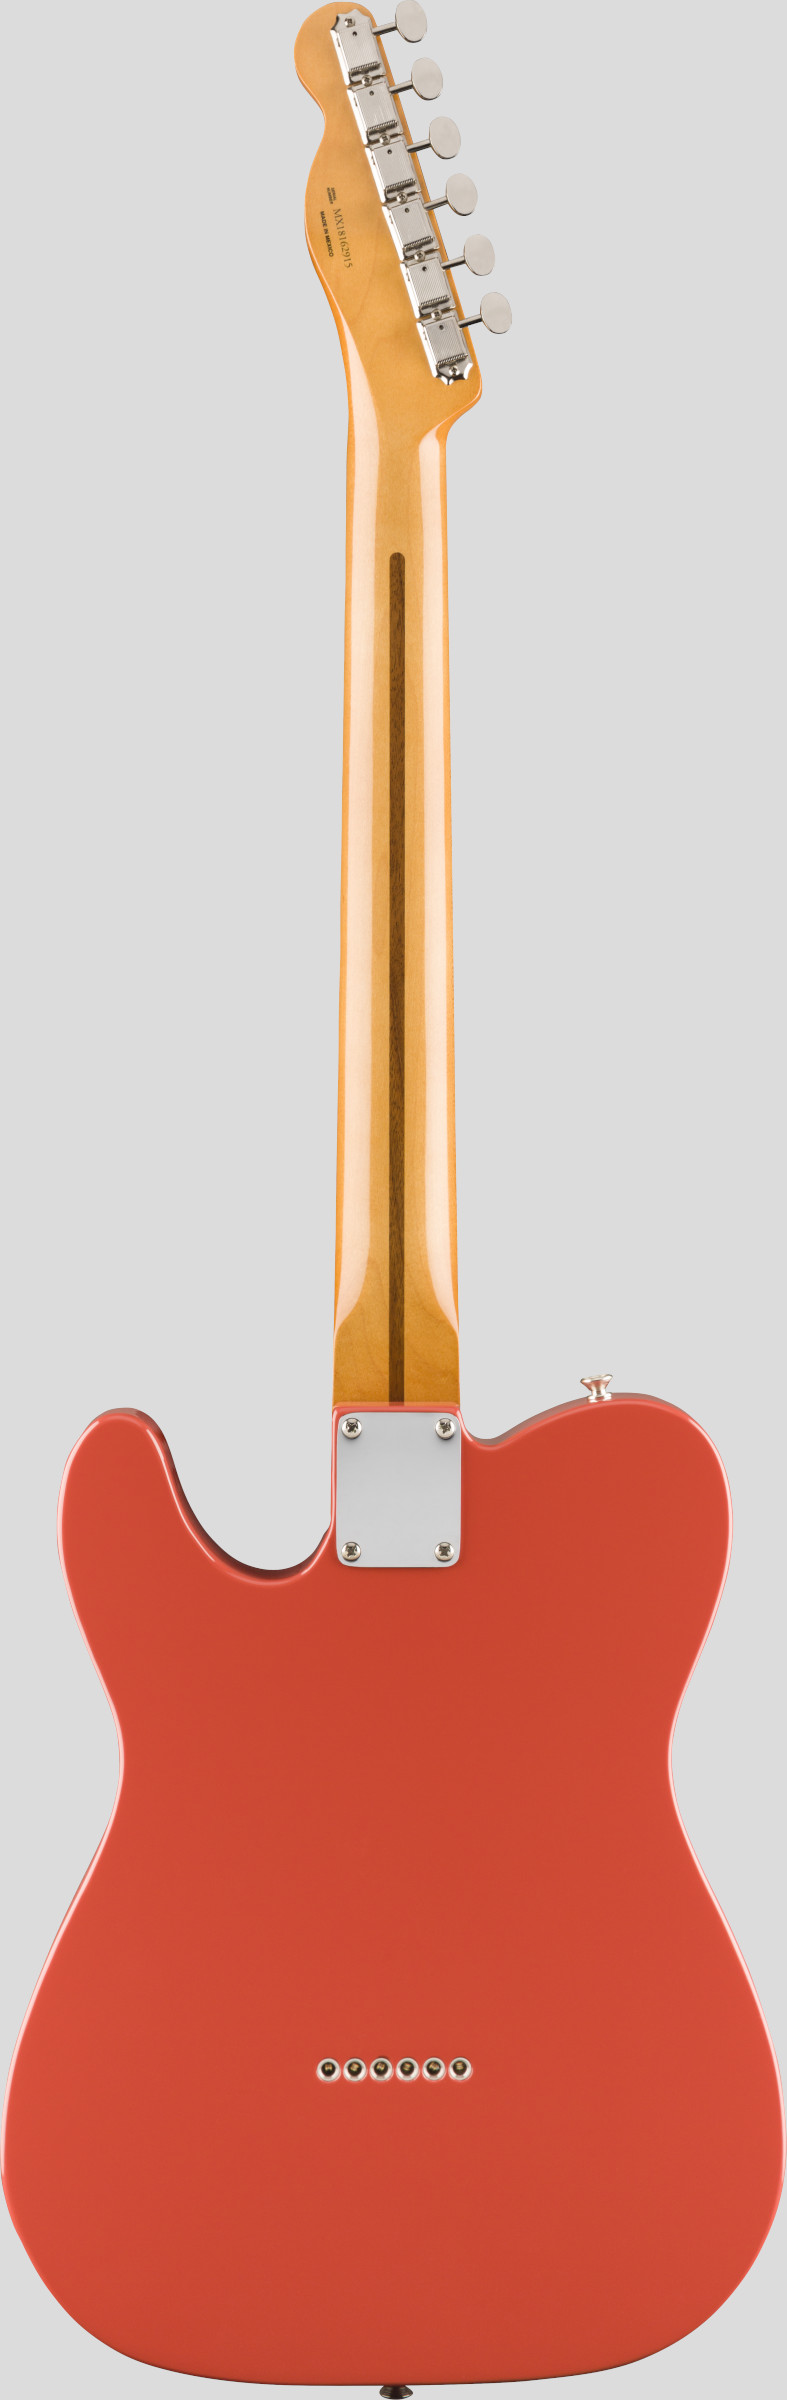 Fender Vintera 50 Telecaster Fiesta Red 2